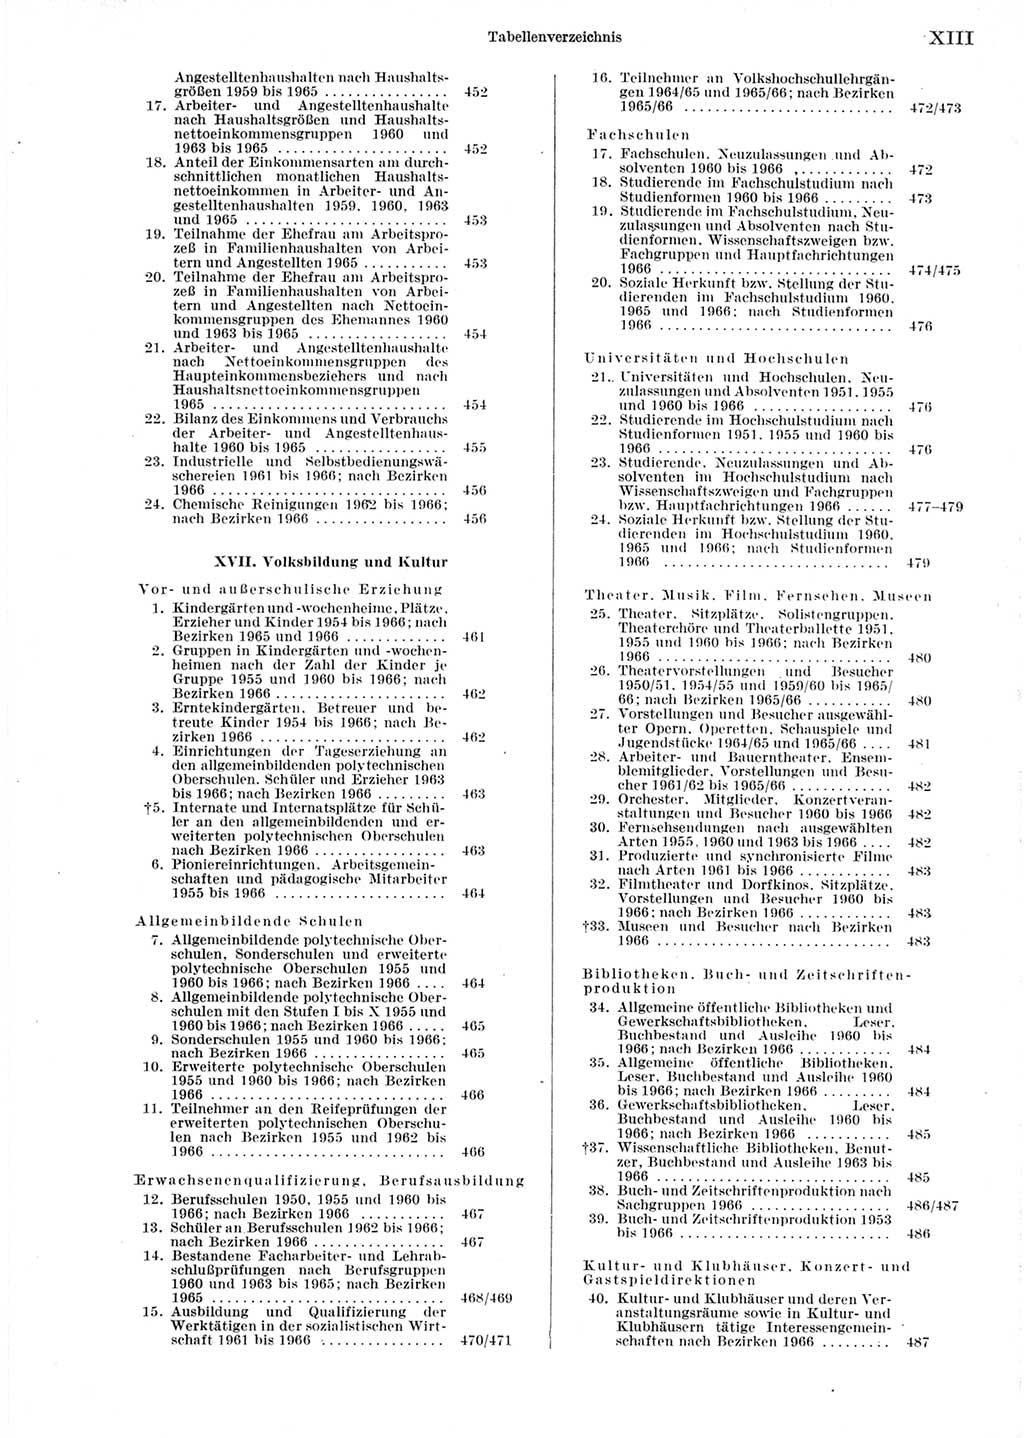 Statistisches Jahrbuch der Deutschen Demokratischen Republik (DDR) 1967, Seite 13 (Stat. Jb. DDR 1967, S. 13)